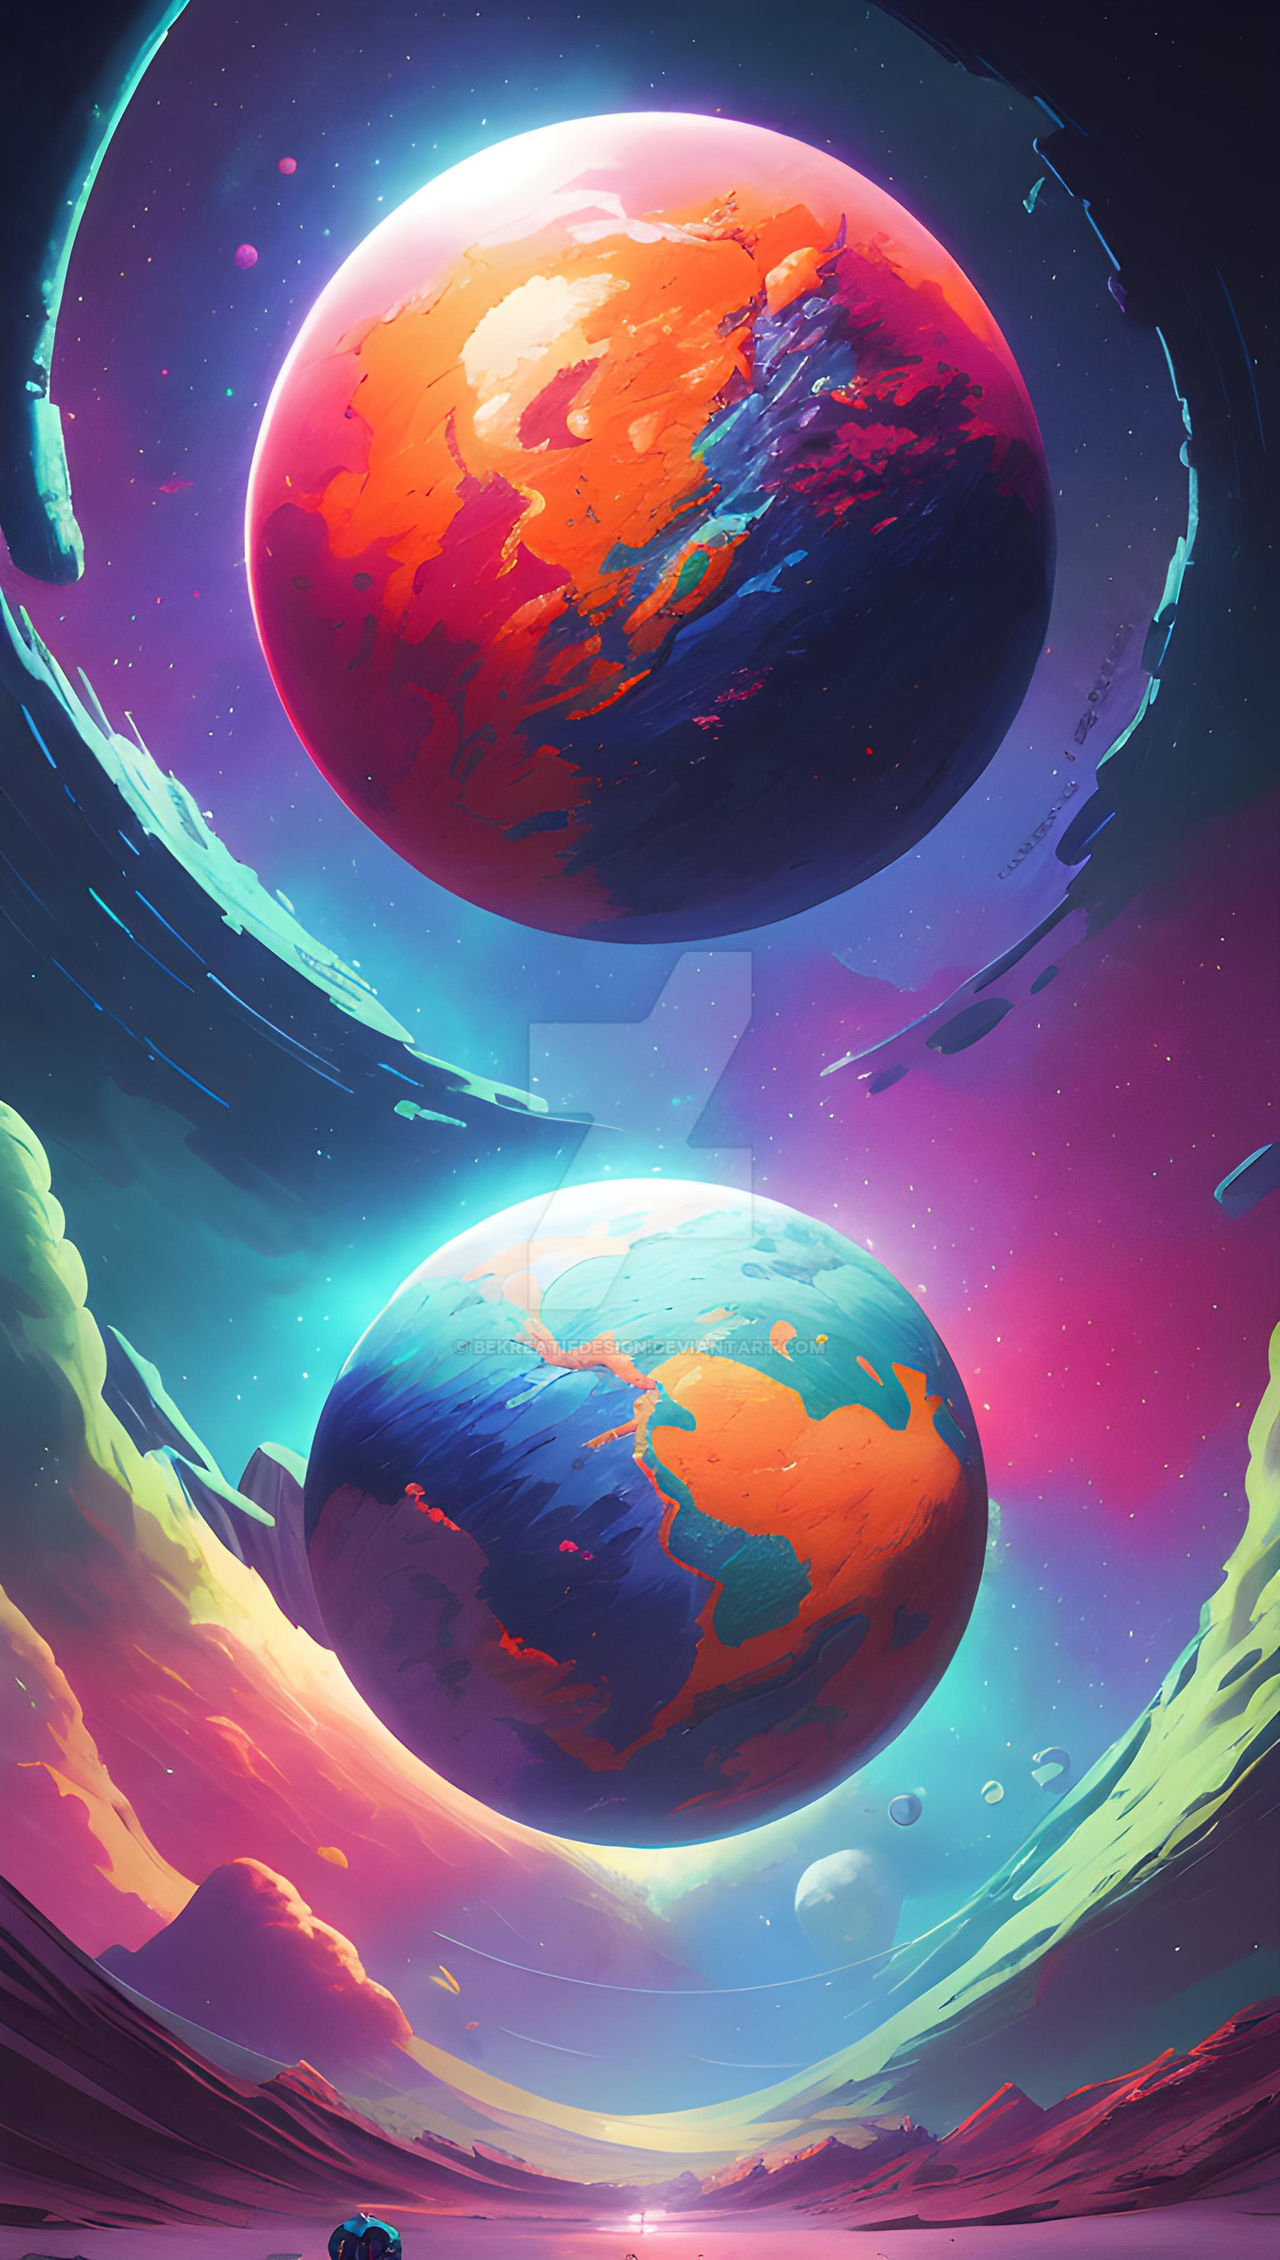 cyberpunk wallpaper iphone cosmos planet by bekreatifdesign on DeviantArt